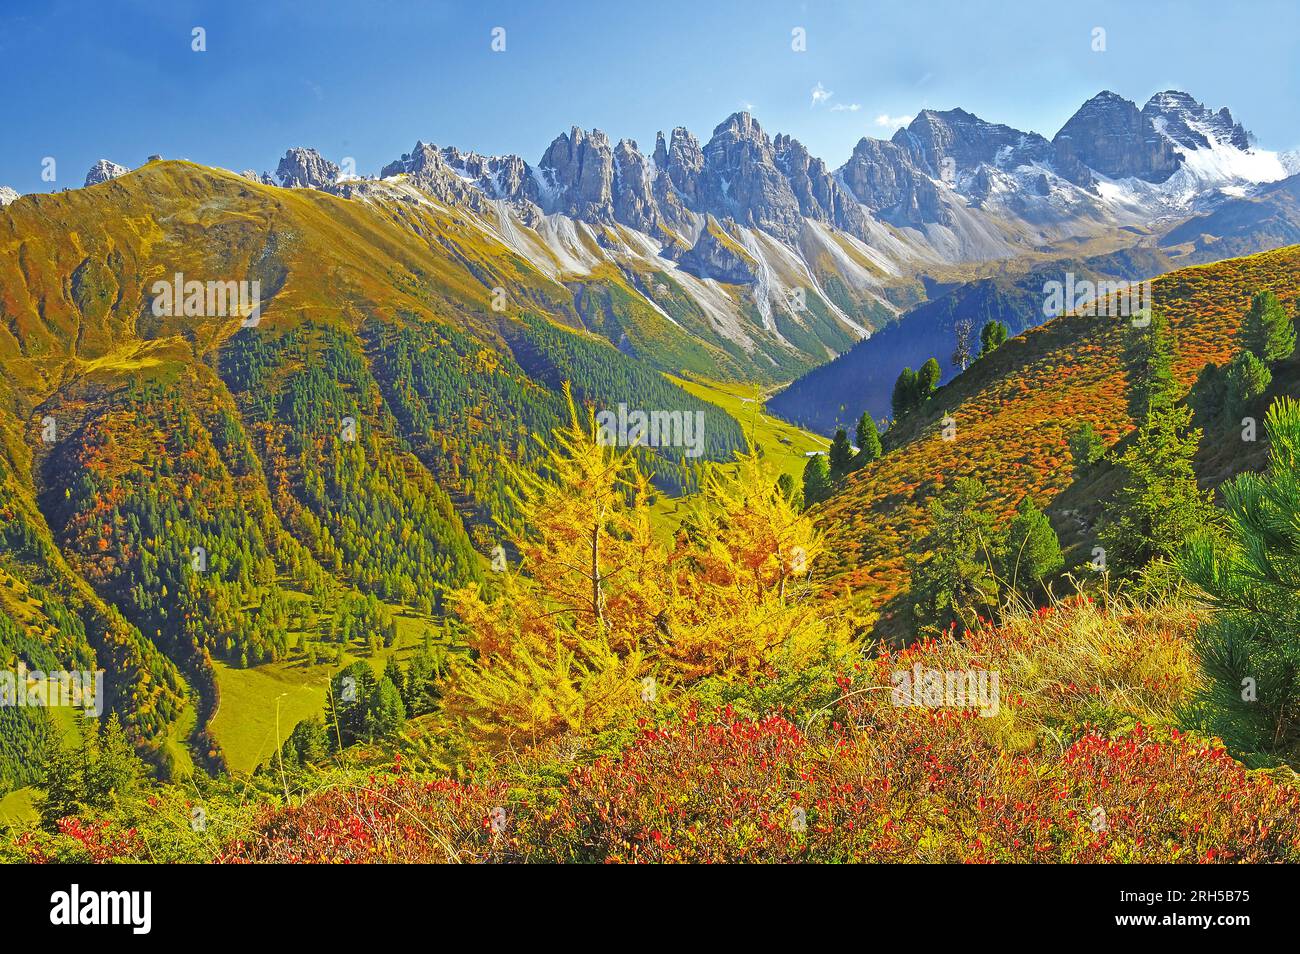 The 'Kalkkoegel' in Sellrain Valley, Tyrol, seen from the heights of Lake Salfein. Austria, Tyrol, Innsbruck Alps, Stock Photo